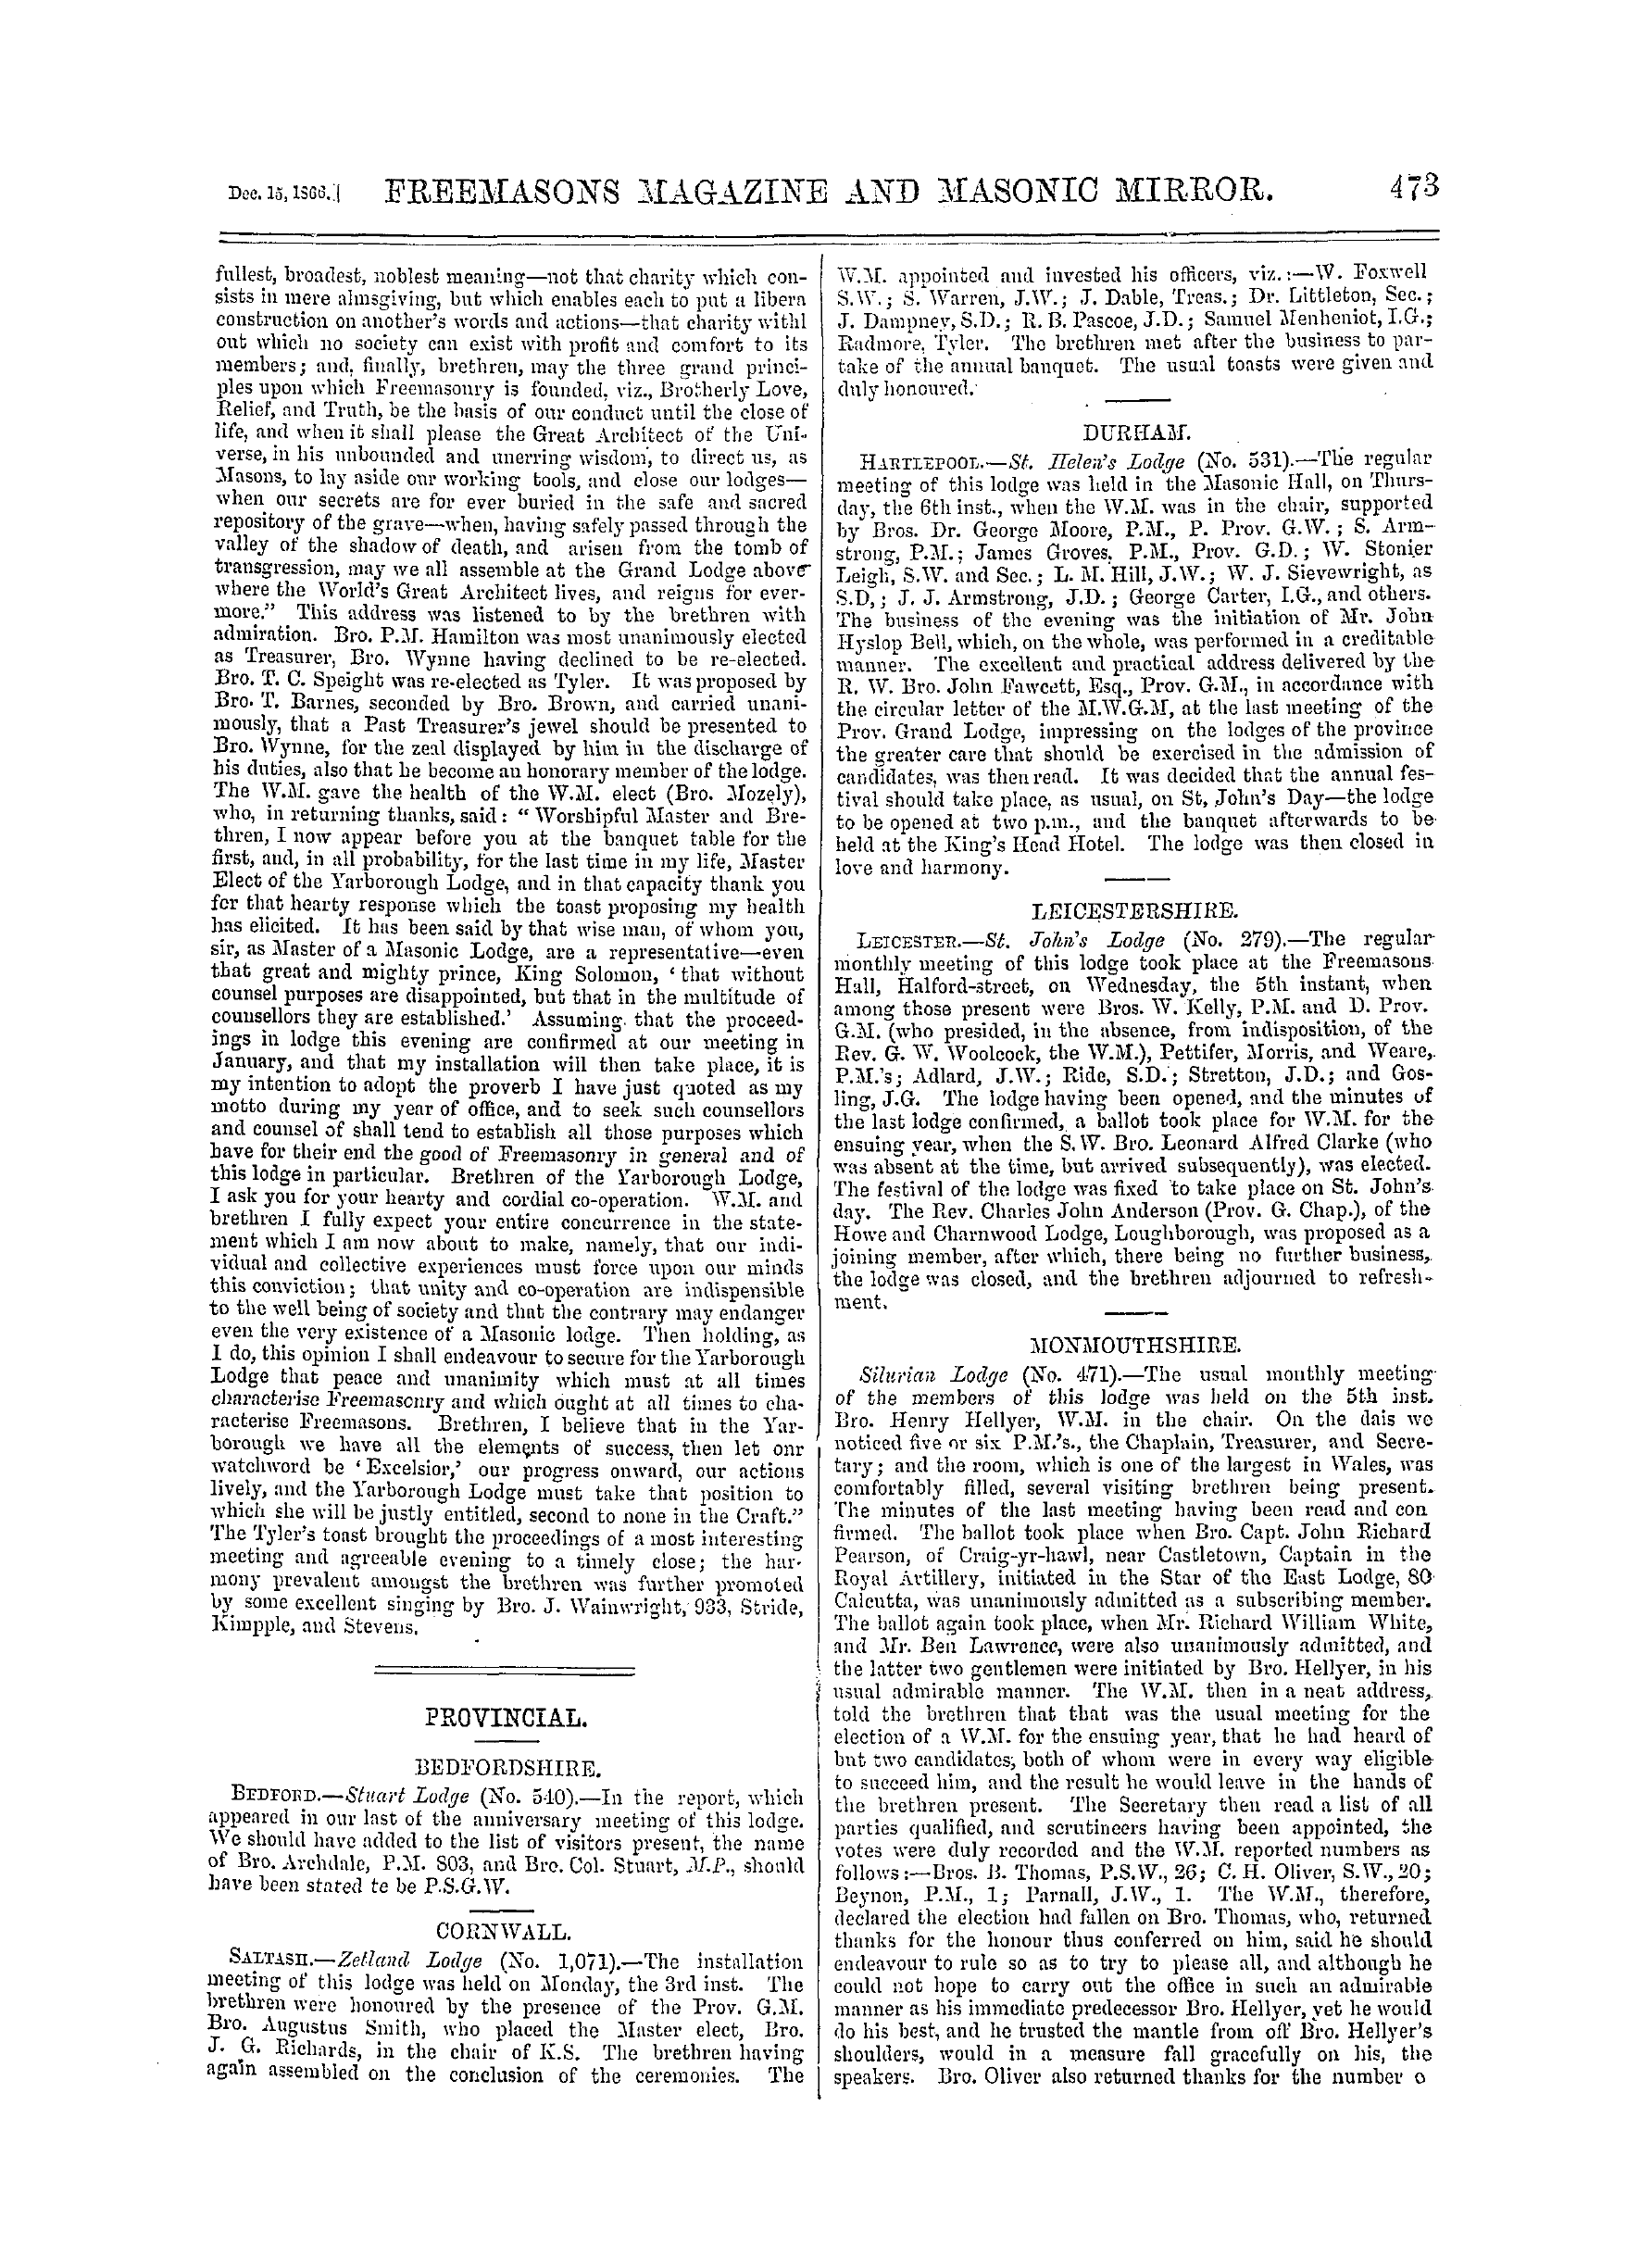 The Freemasons' Monthly Magazine: 1866-12-15: 13